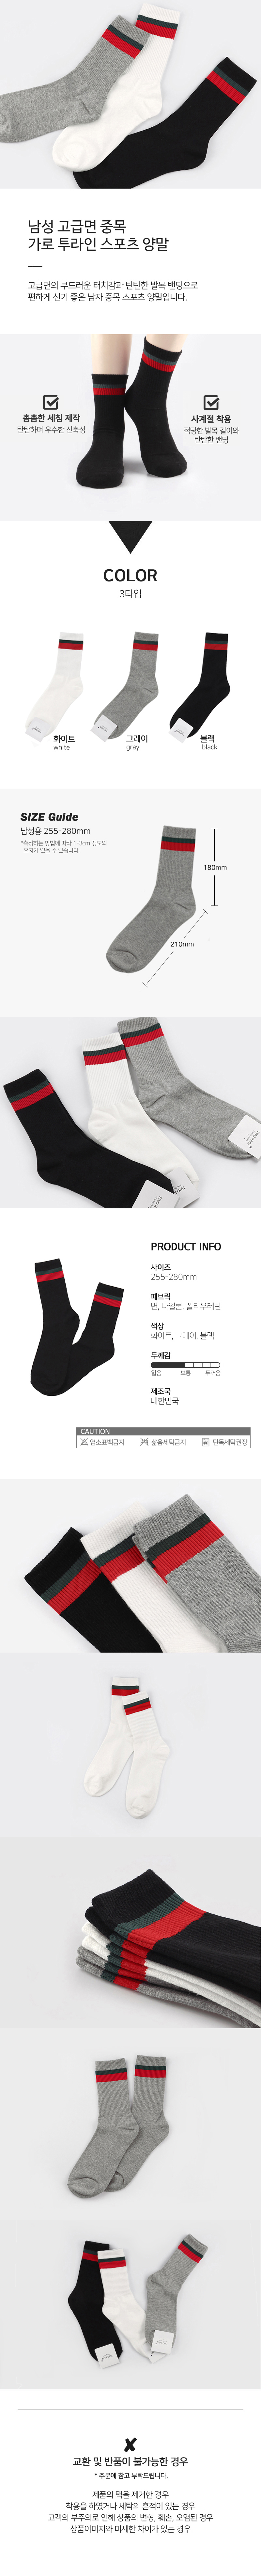 socks_00110.jpg